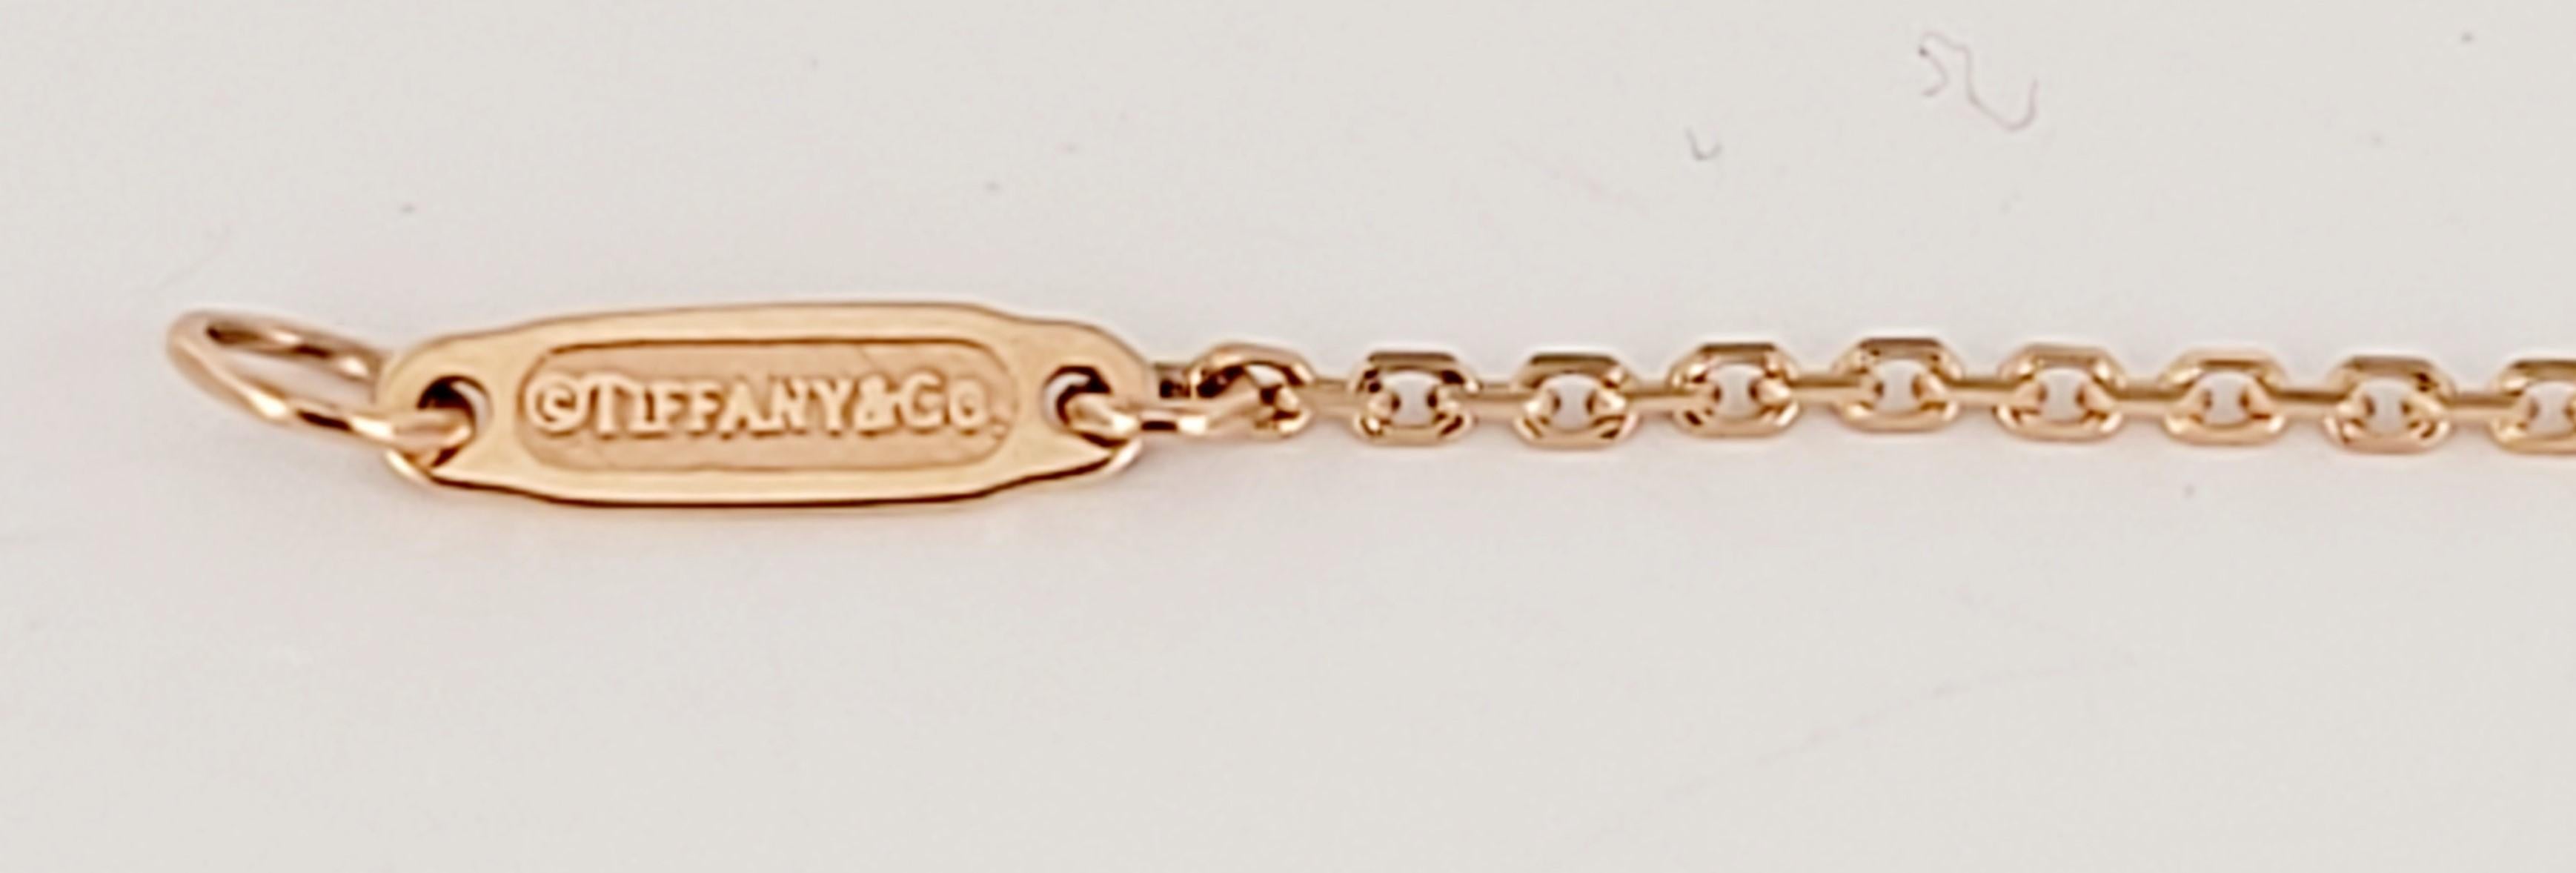 Marke Tiffany & Co 
MATERIAL 18K Rose Gold
Kettenlänge 20''Long
Kette ist nicht einstellbar 
Gewicht 2.2gr
Geschlecht Unisex
Zustand Neu , nie getragen
Kommt mit Tiffany & Co Etui